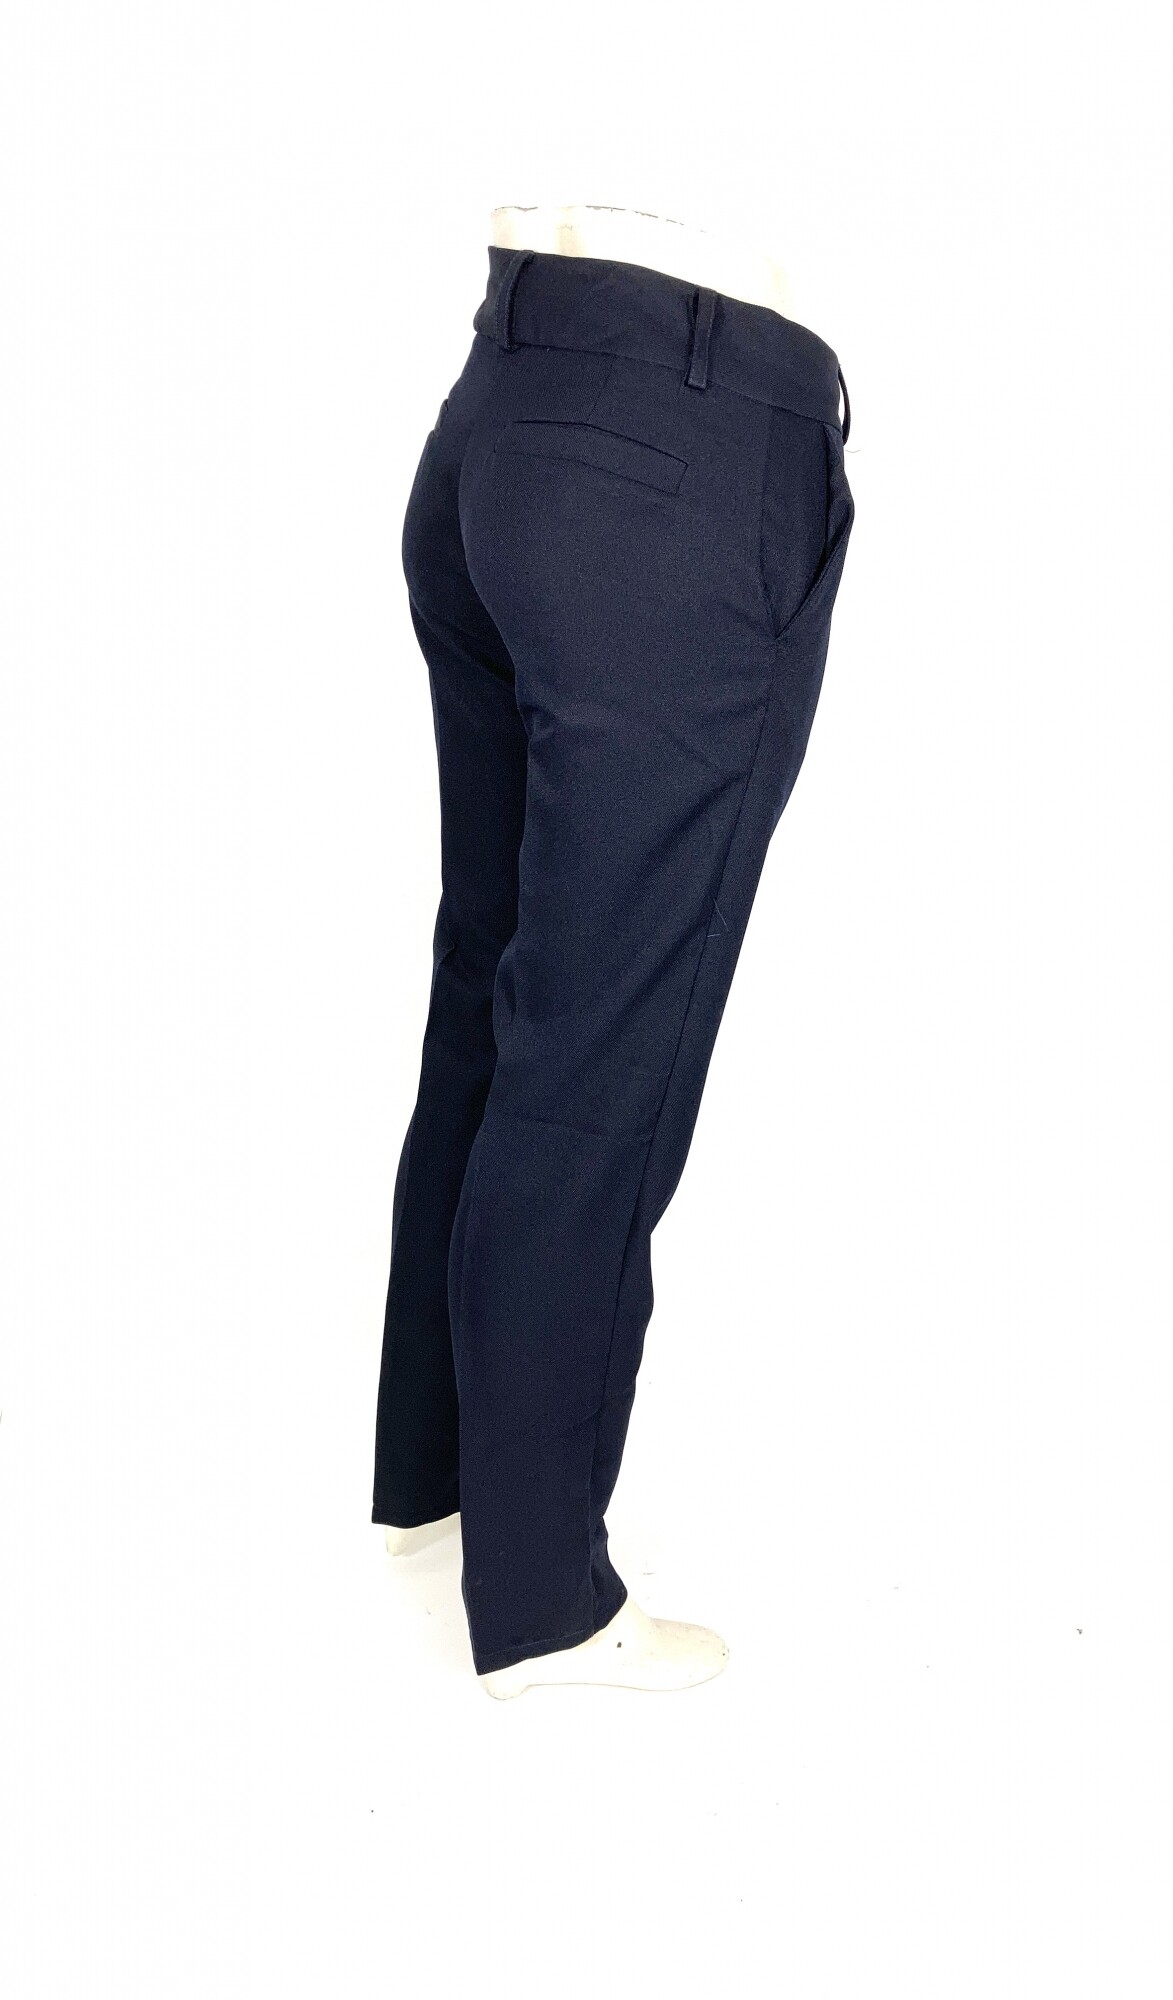 https://f.fcdn.app/imgs/bd5f8b/www.losmuchachosmaldonado.com.uy/mumauy/977b/original/catalogo/PVDU_azul_3/2000-2000/pantalon-vestir-dama-uniforme-azul.jpg